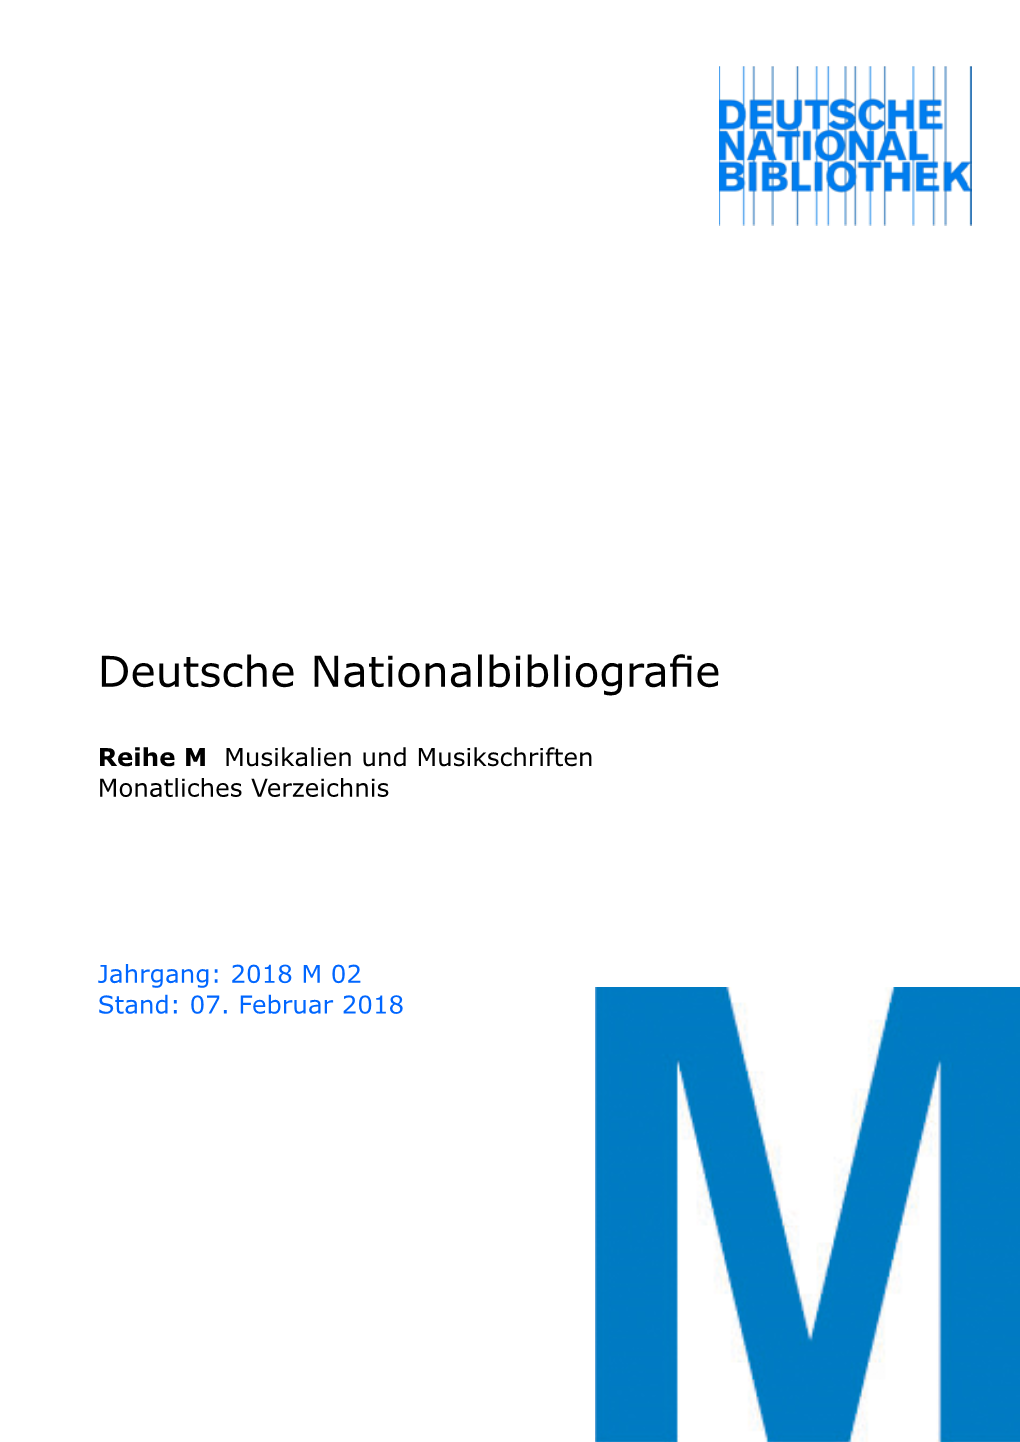 Deutsche Nationalbibliografie 2018 M 02